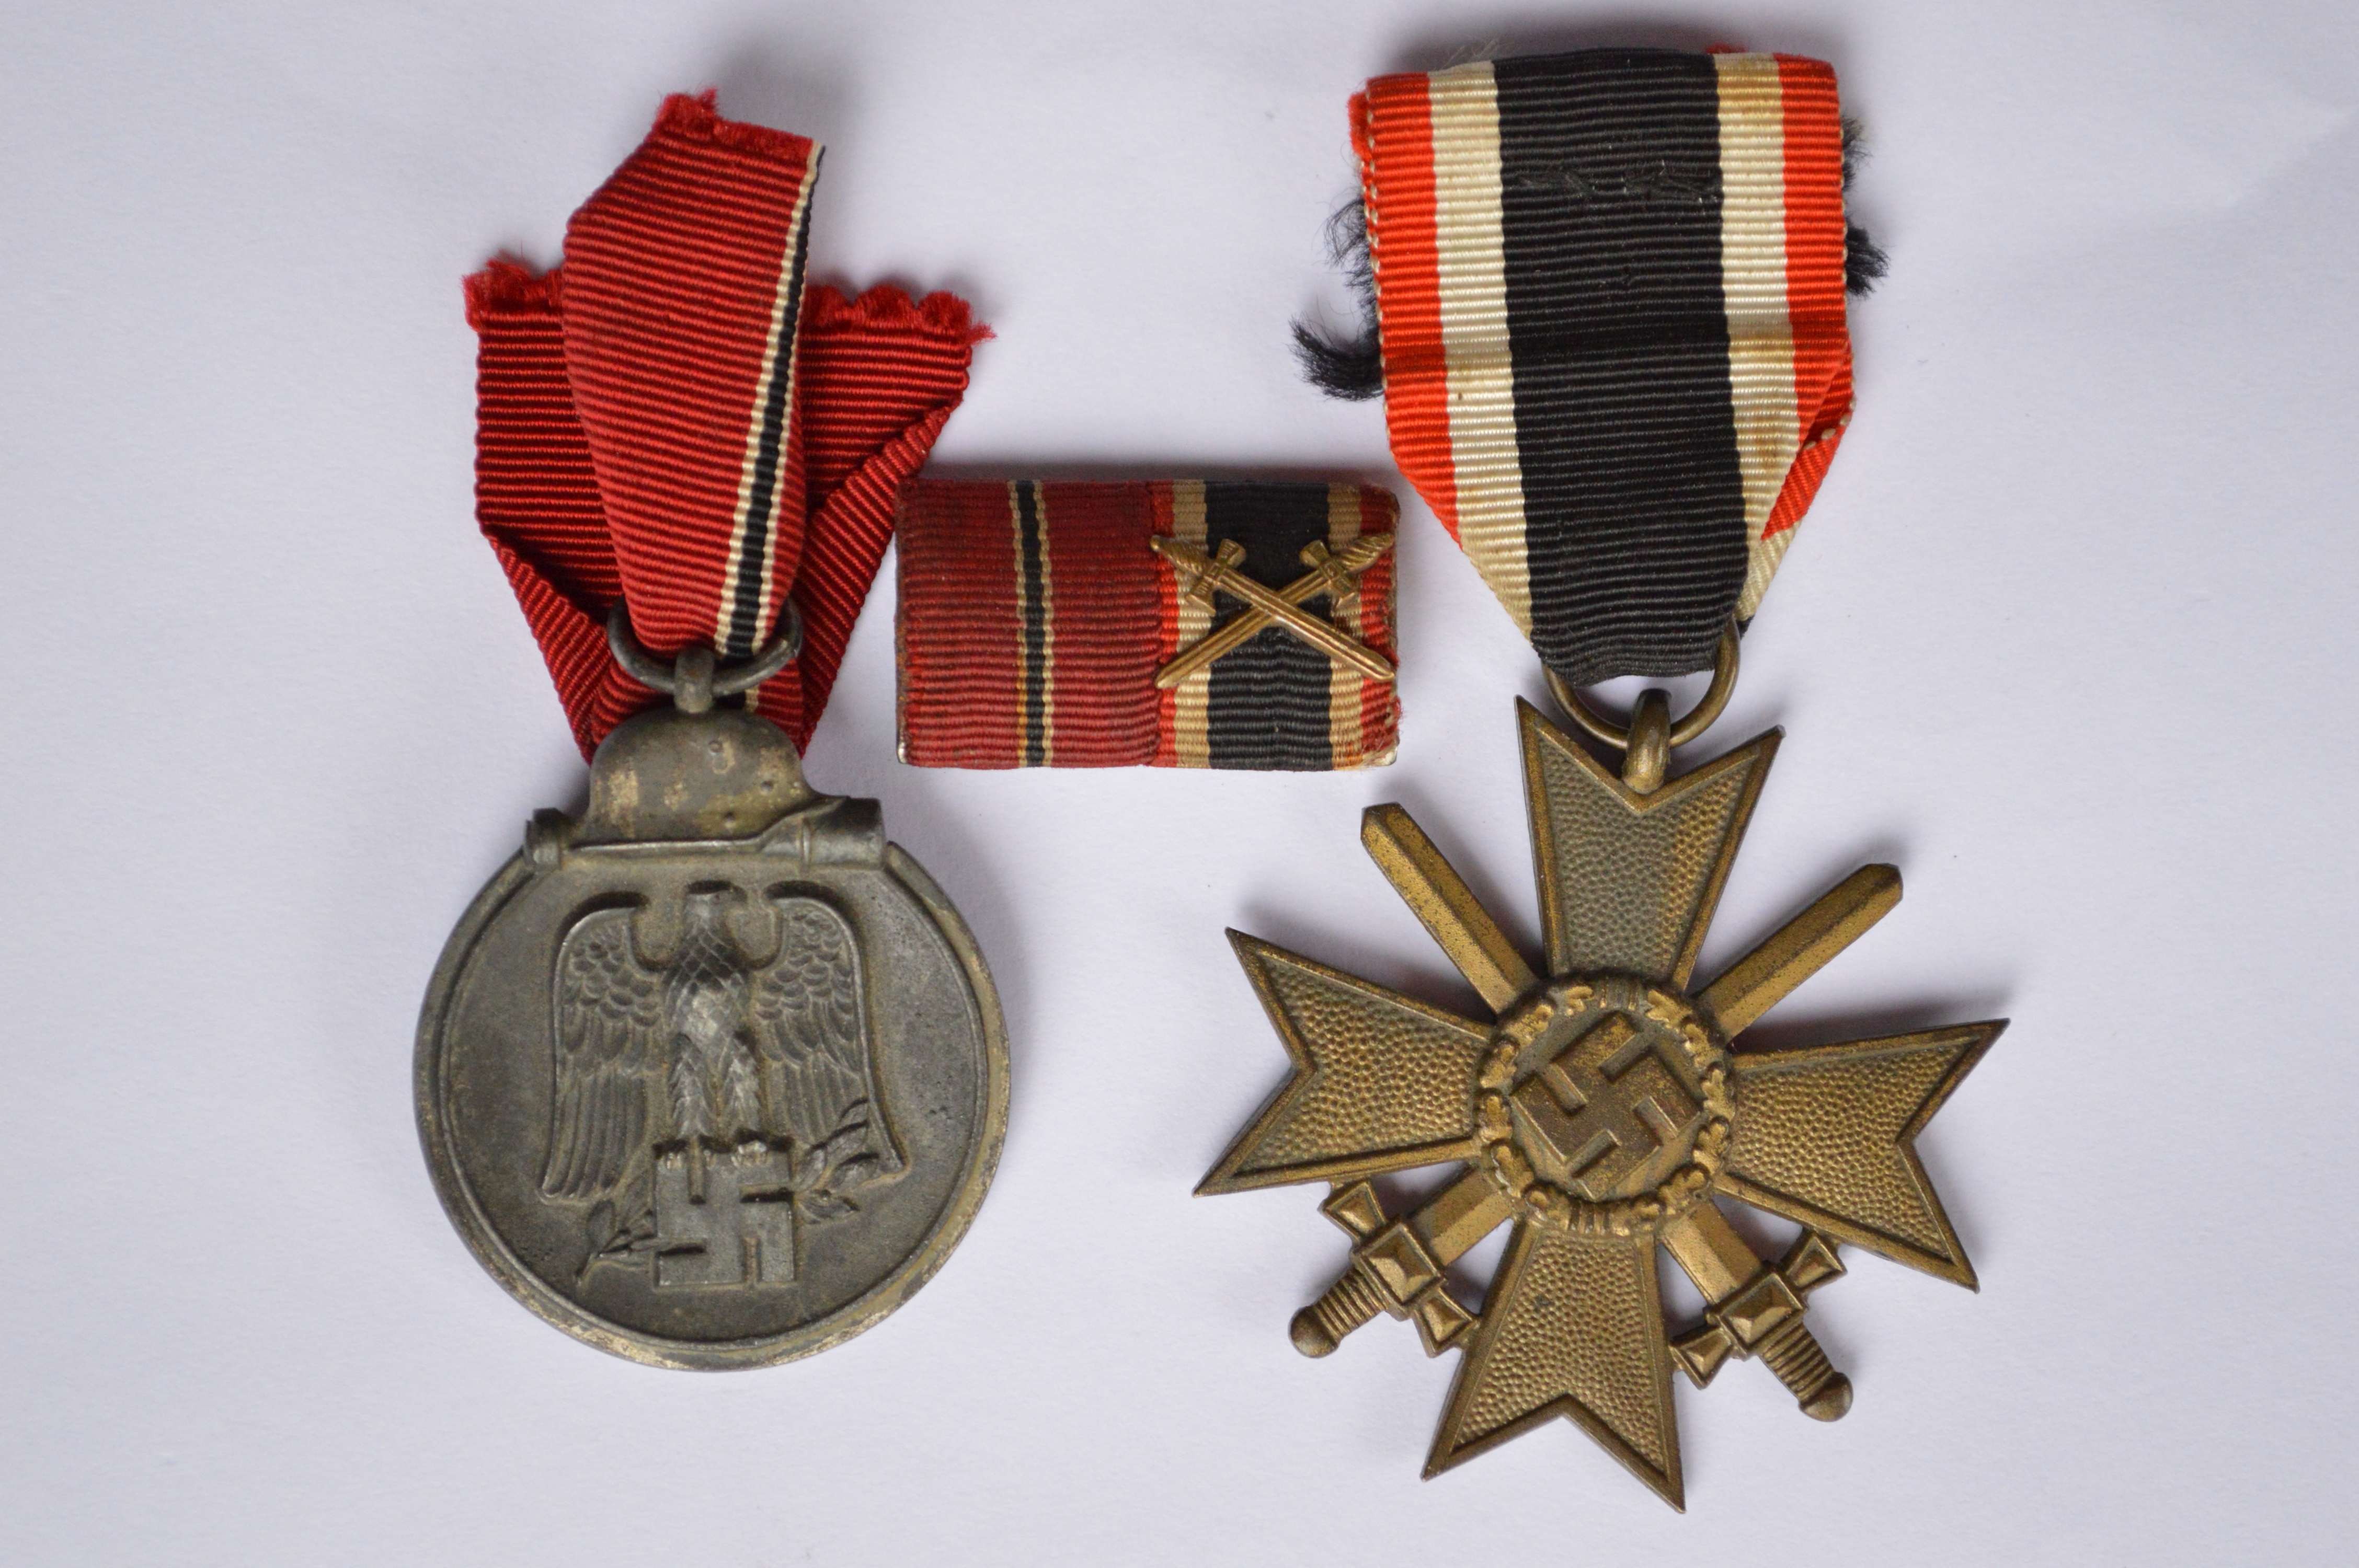 Germany Army WW1 German medal of War Merit ribbon bar